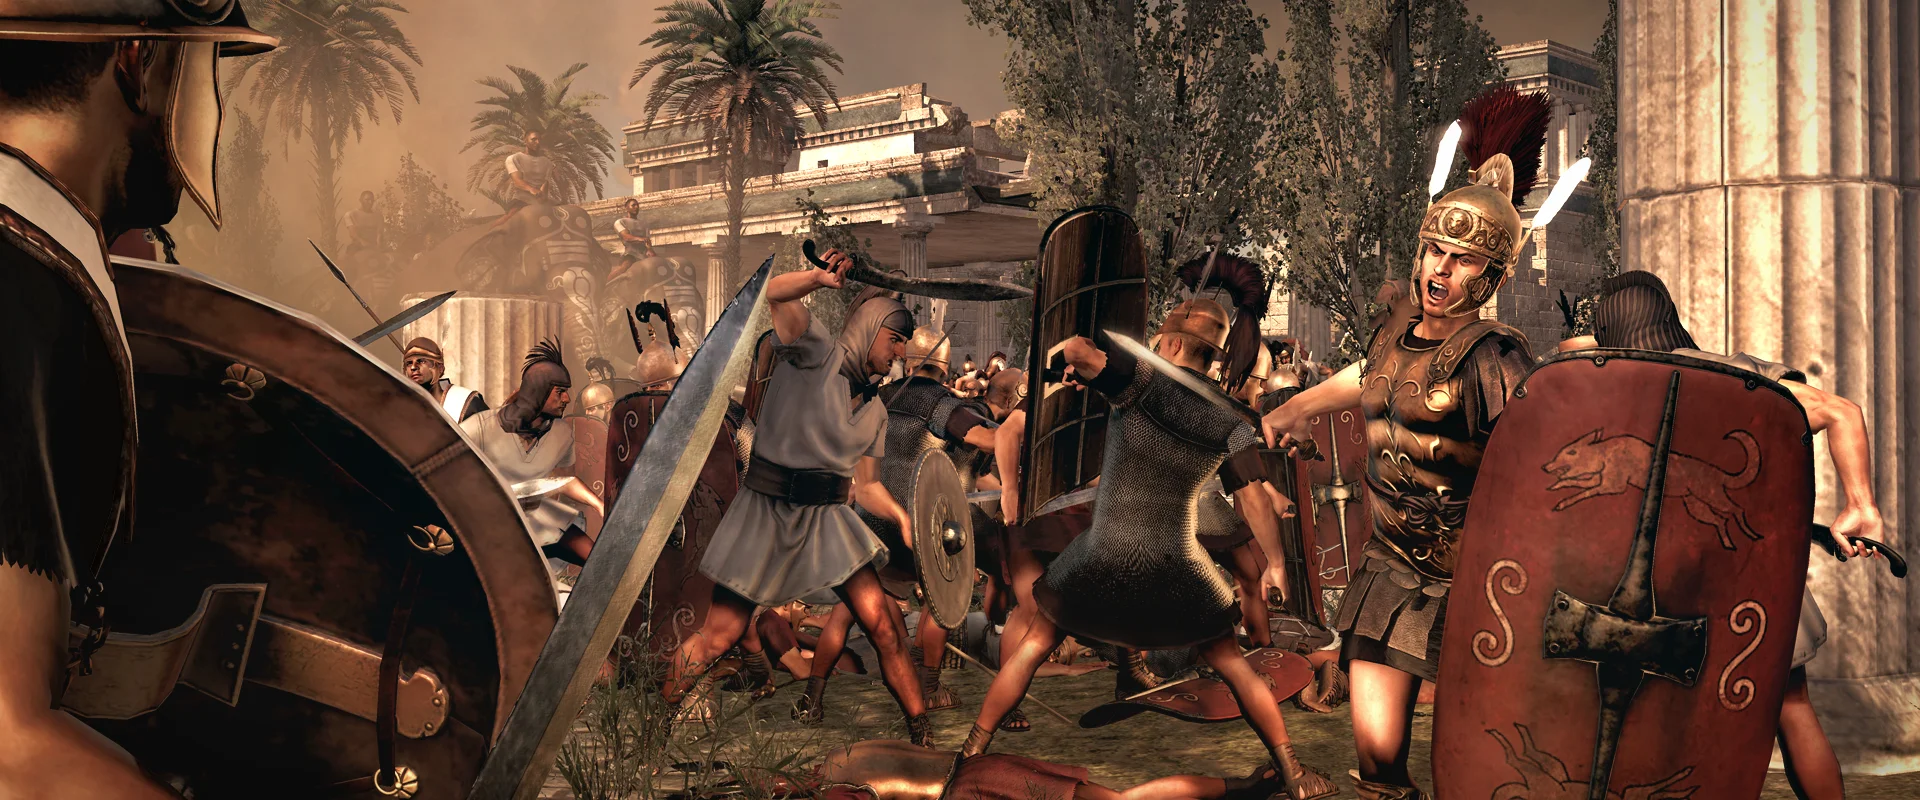 Total War: Rome 2. Репортаж с Игромира 2012. - фото 4